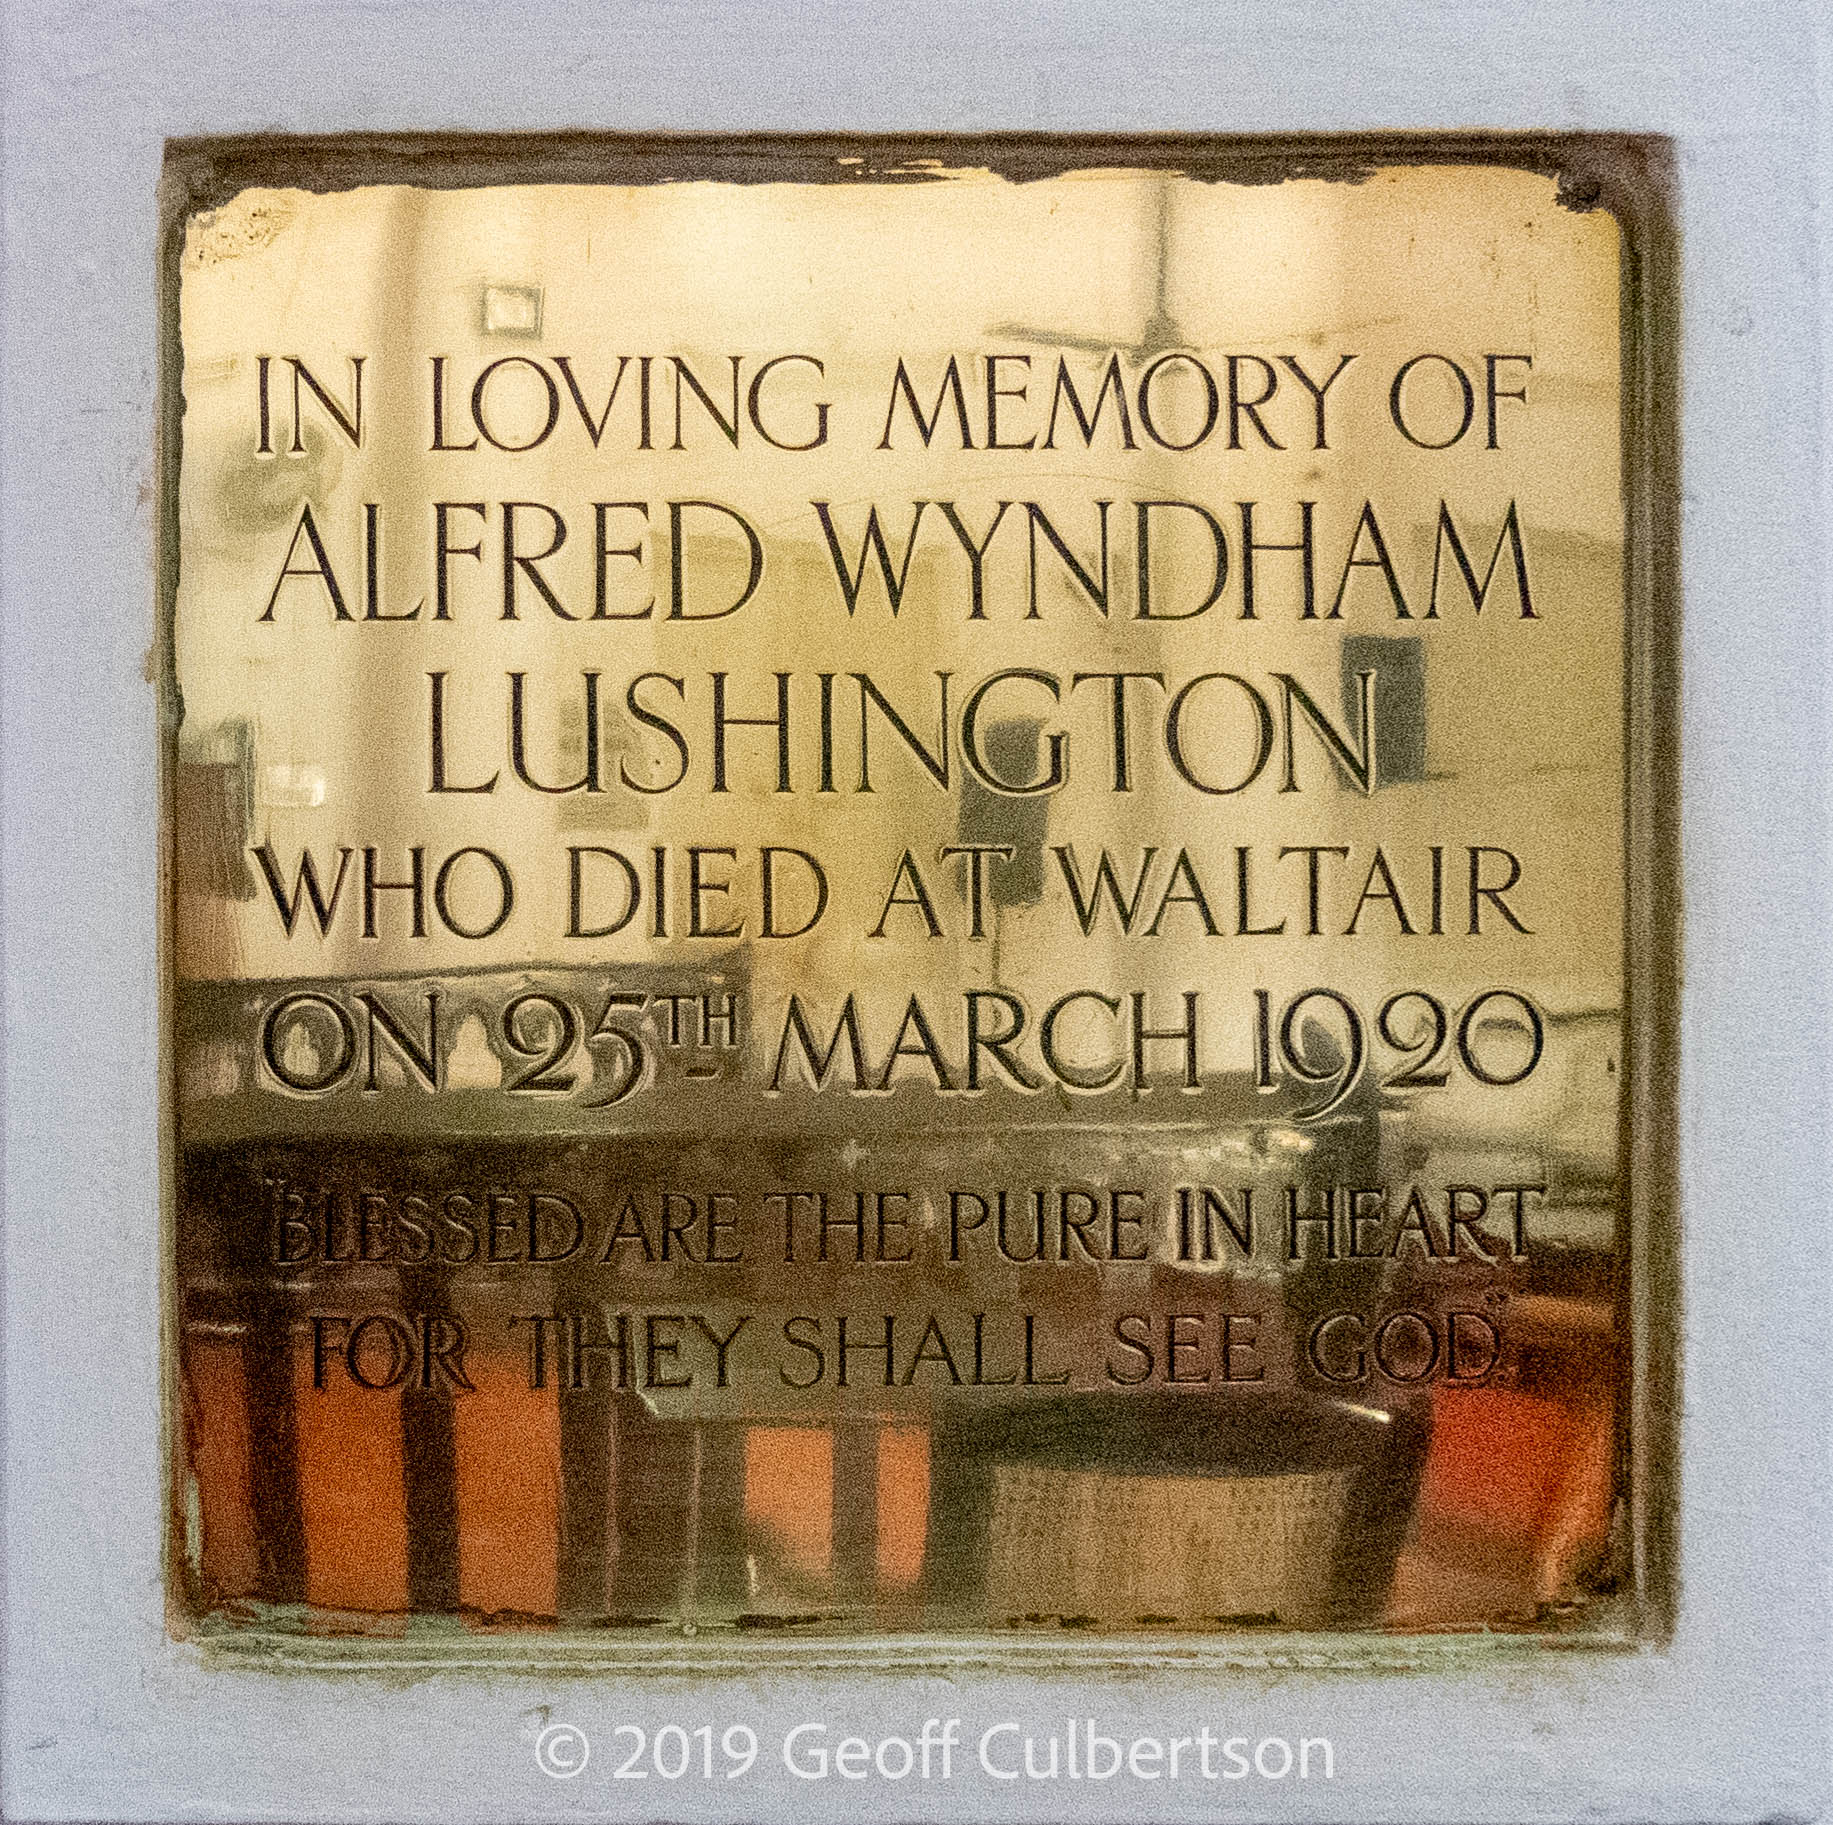 MI - Alfred Wyndham Lushington died 25-Mar-1920